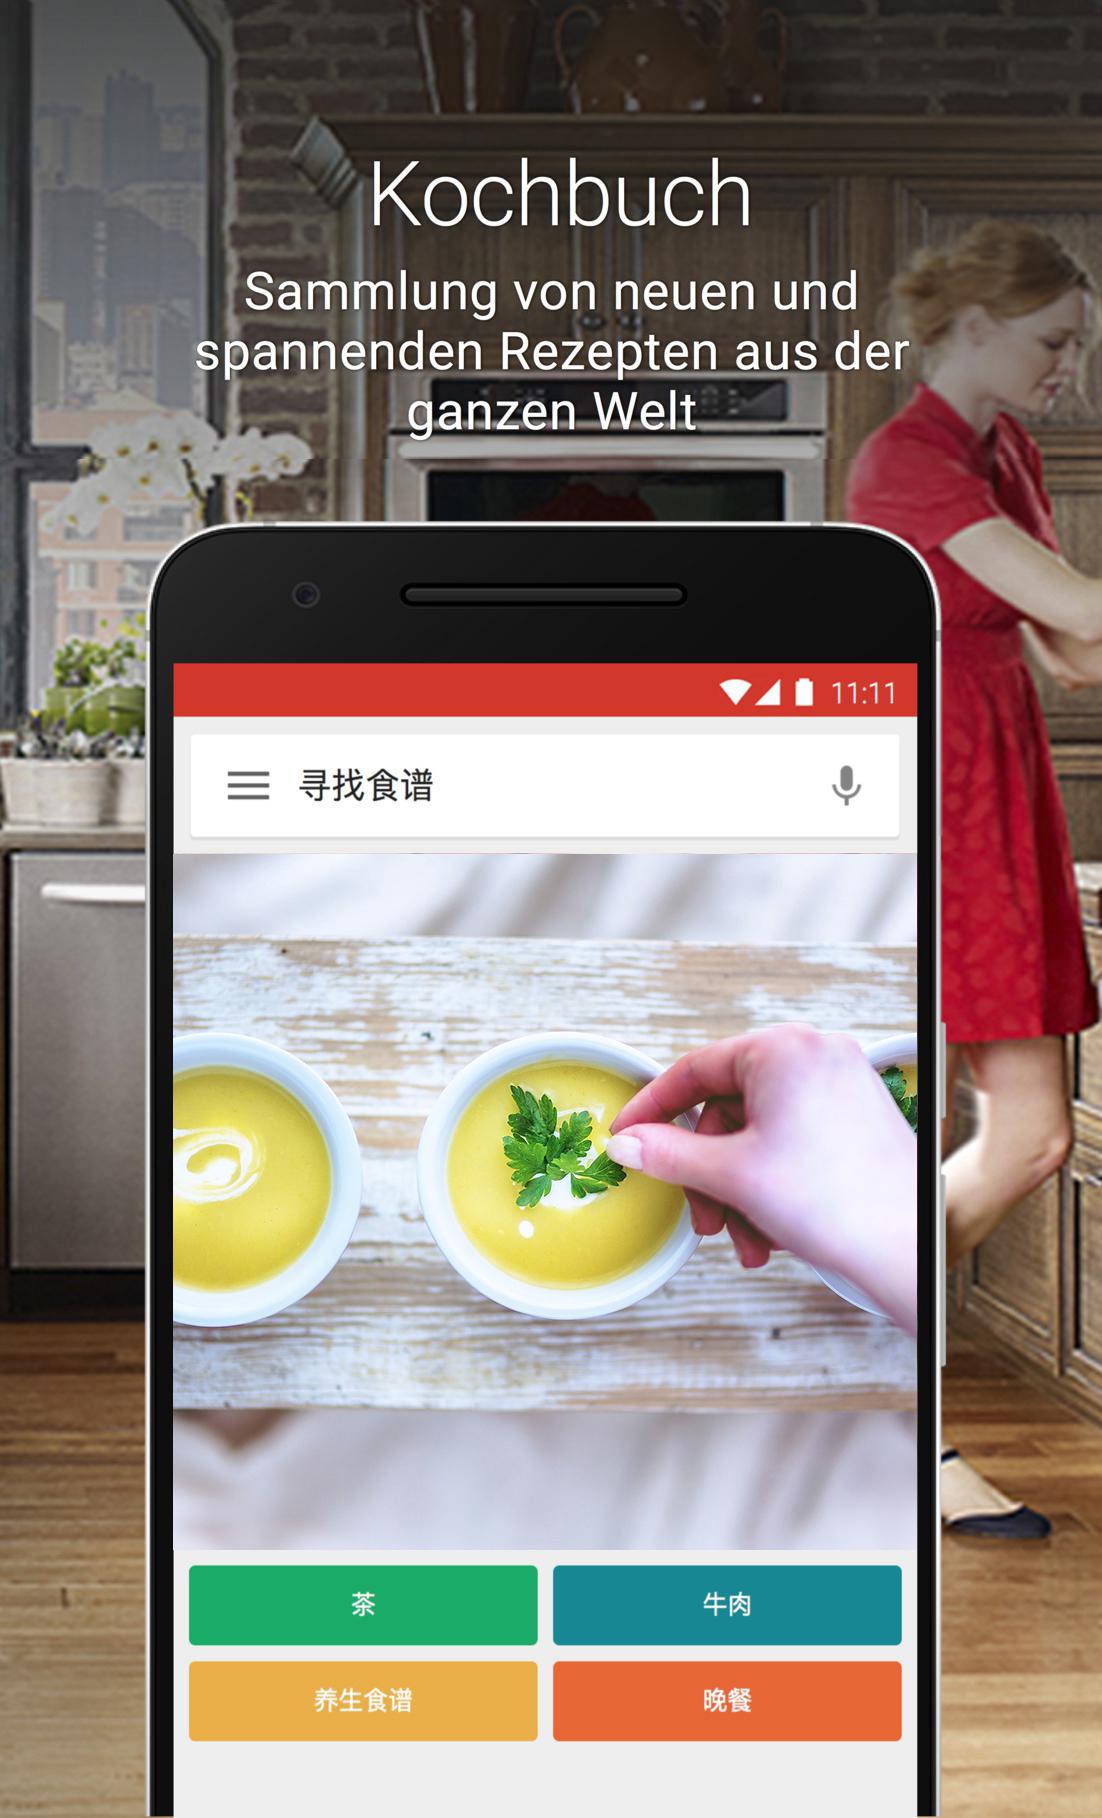 Android application Cookbook Recipes screenshort